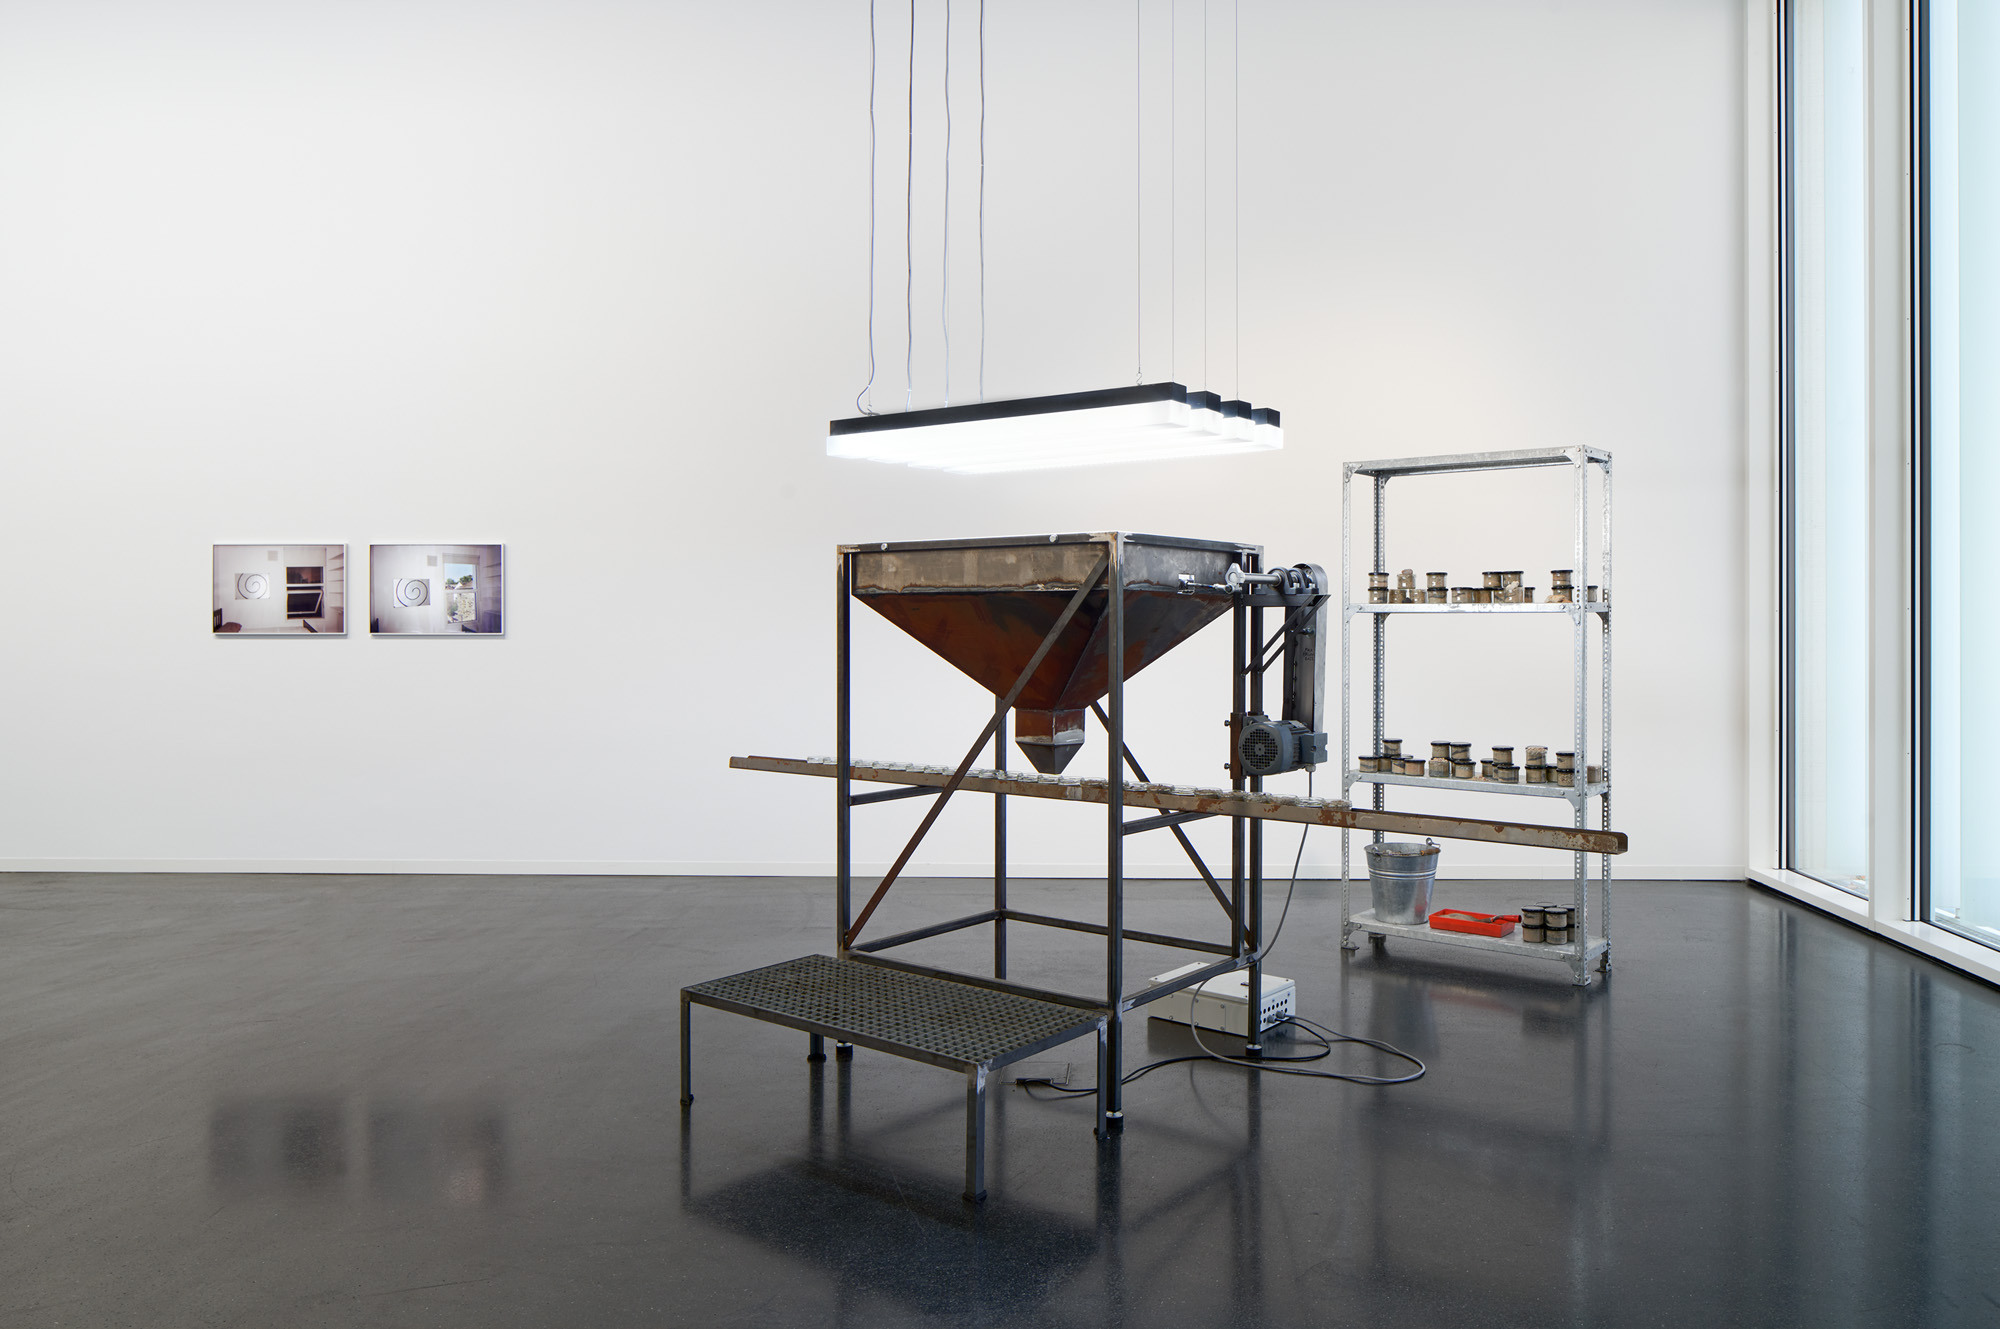 Max BrÃ¼ck, 0-5mm, 2022, installation view Kunsthaus Wiesbaden, 2022, Courtesy the artist, Â©Hessische Kulturstiftung, photo: Jens Gerber